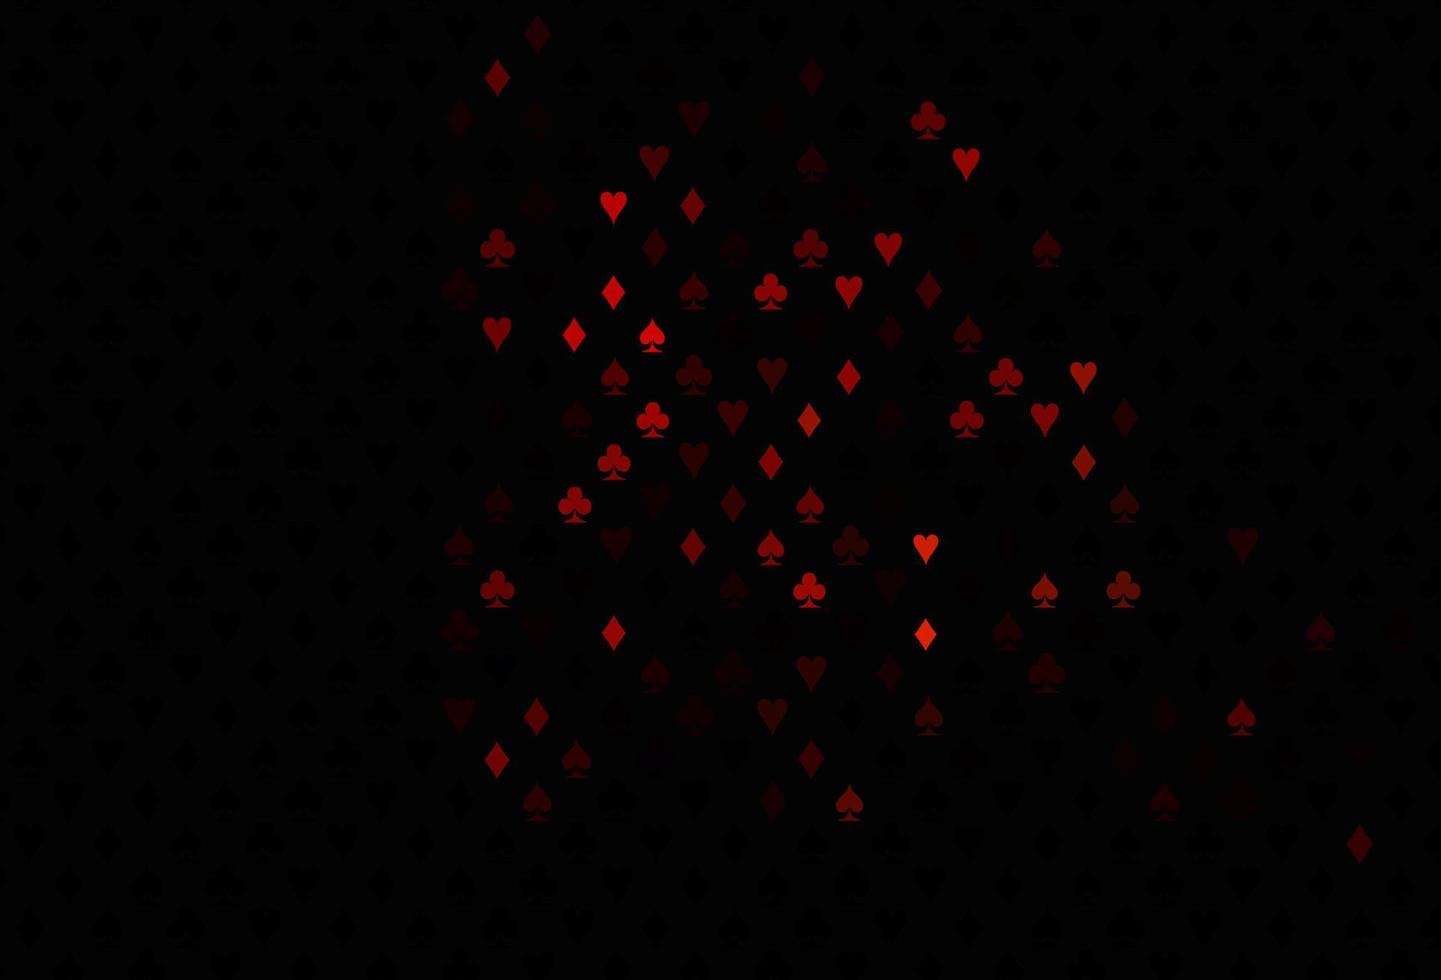 copertina vettoriale rosso scuro con simboli di gioco d'azzardo.